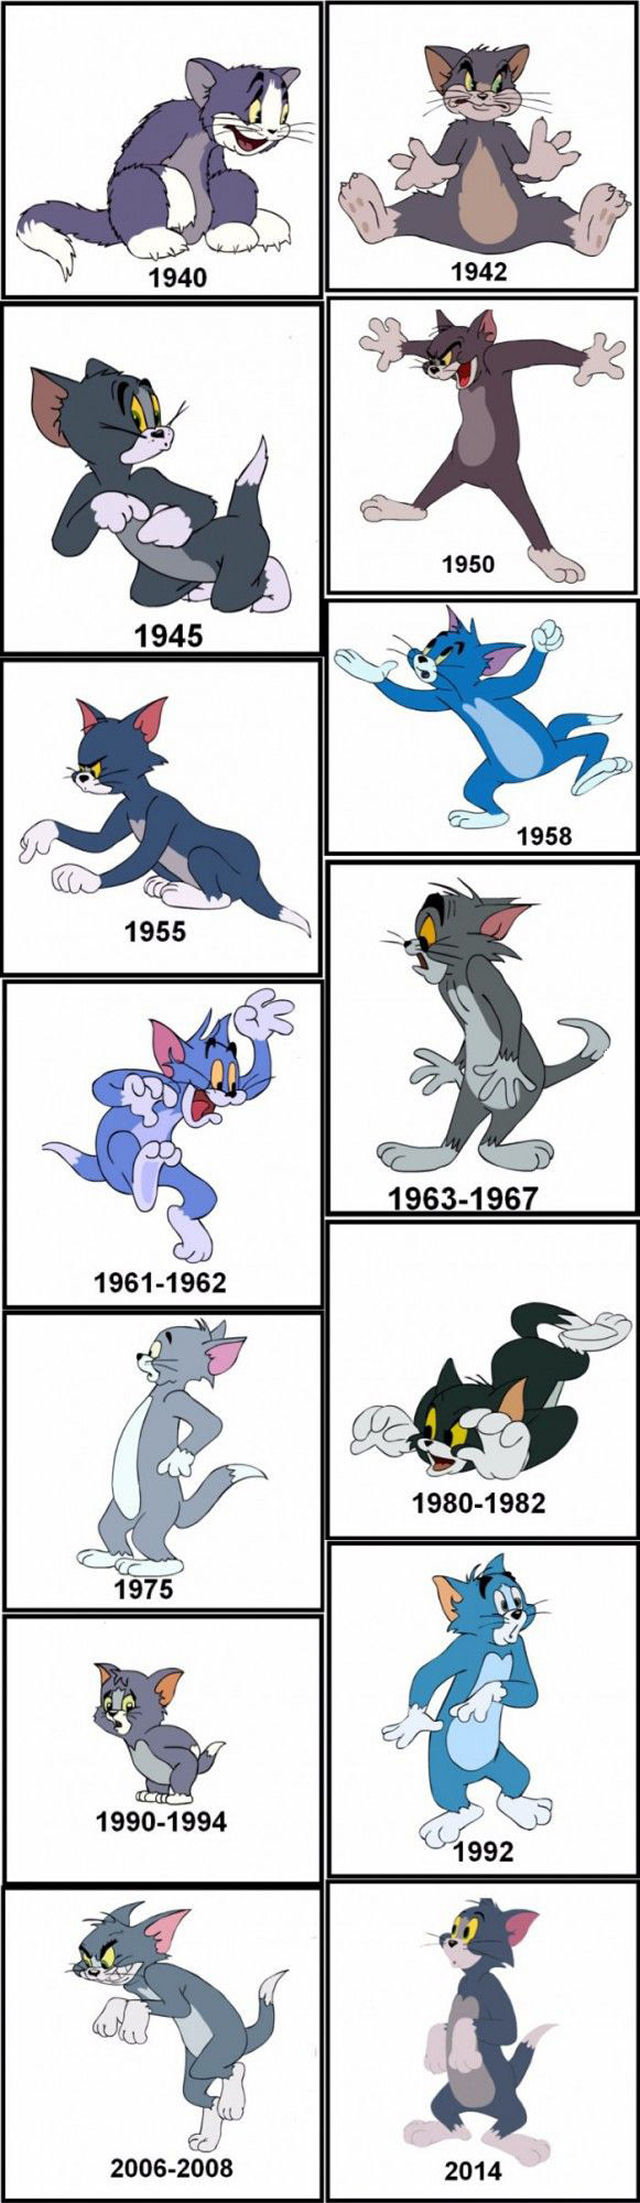 A evoluo do Tom.